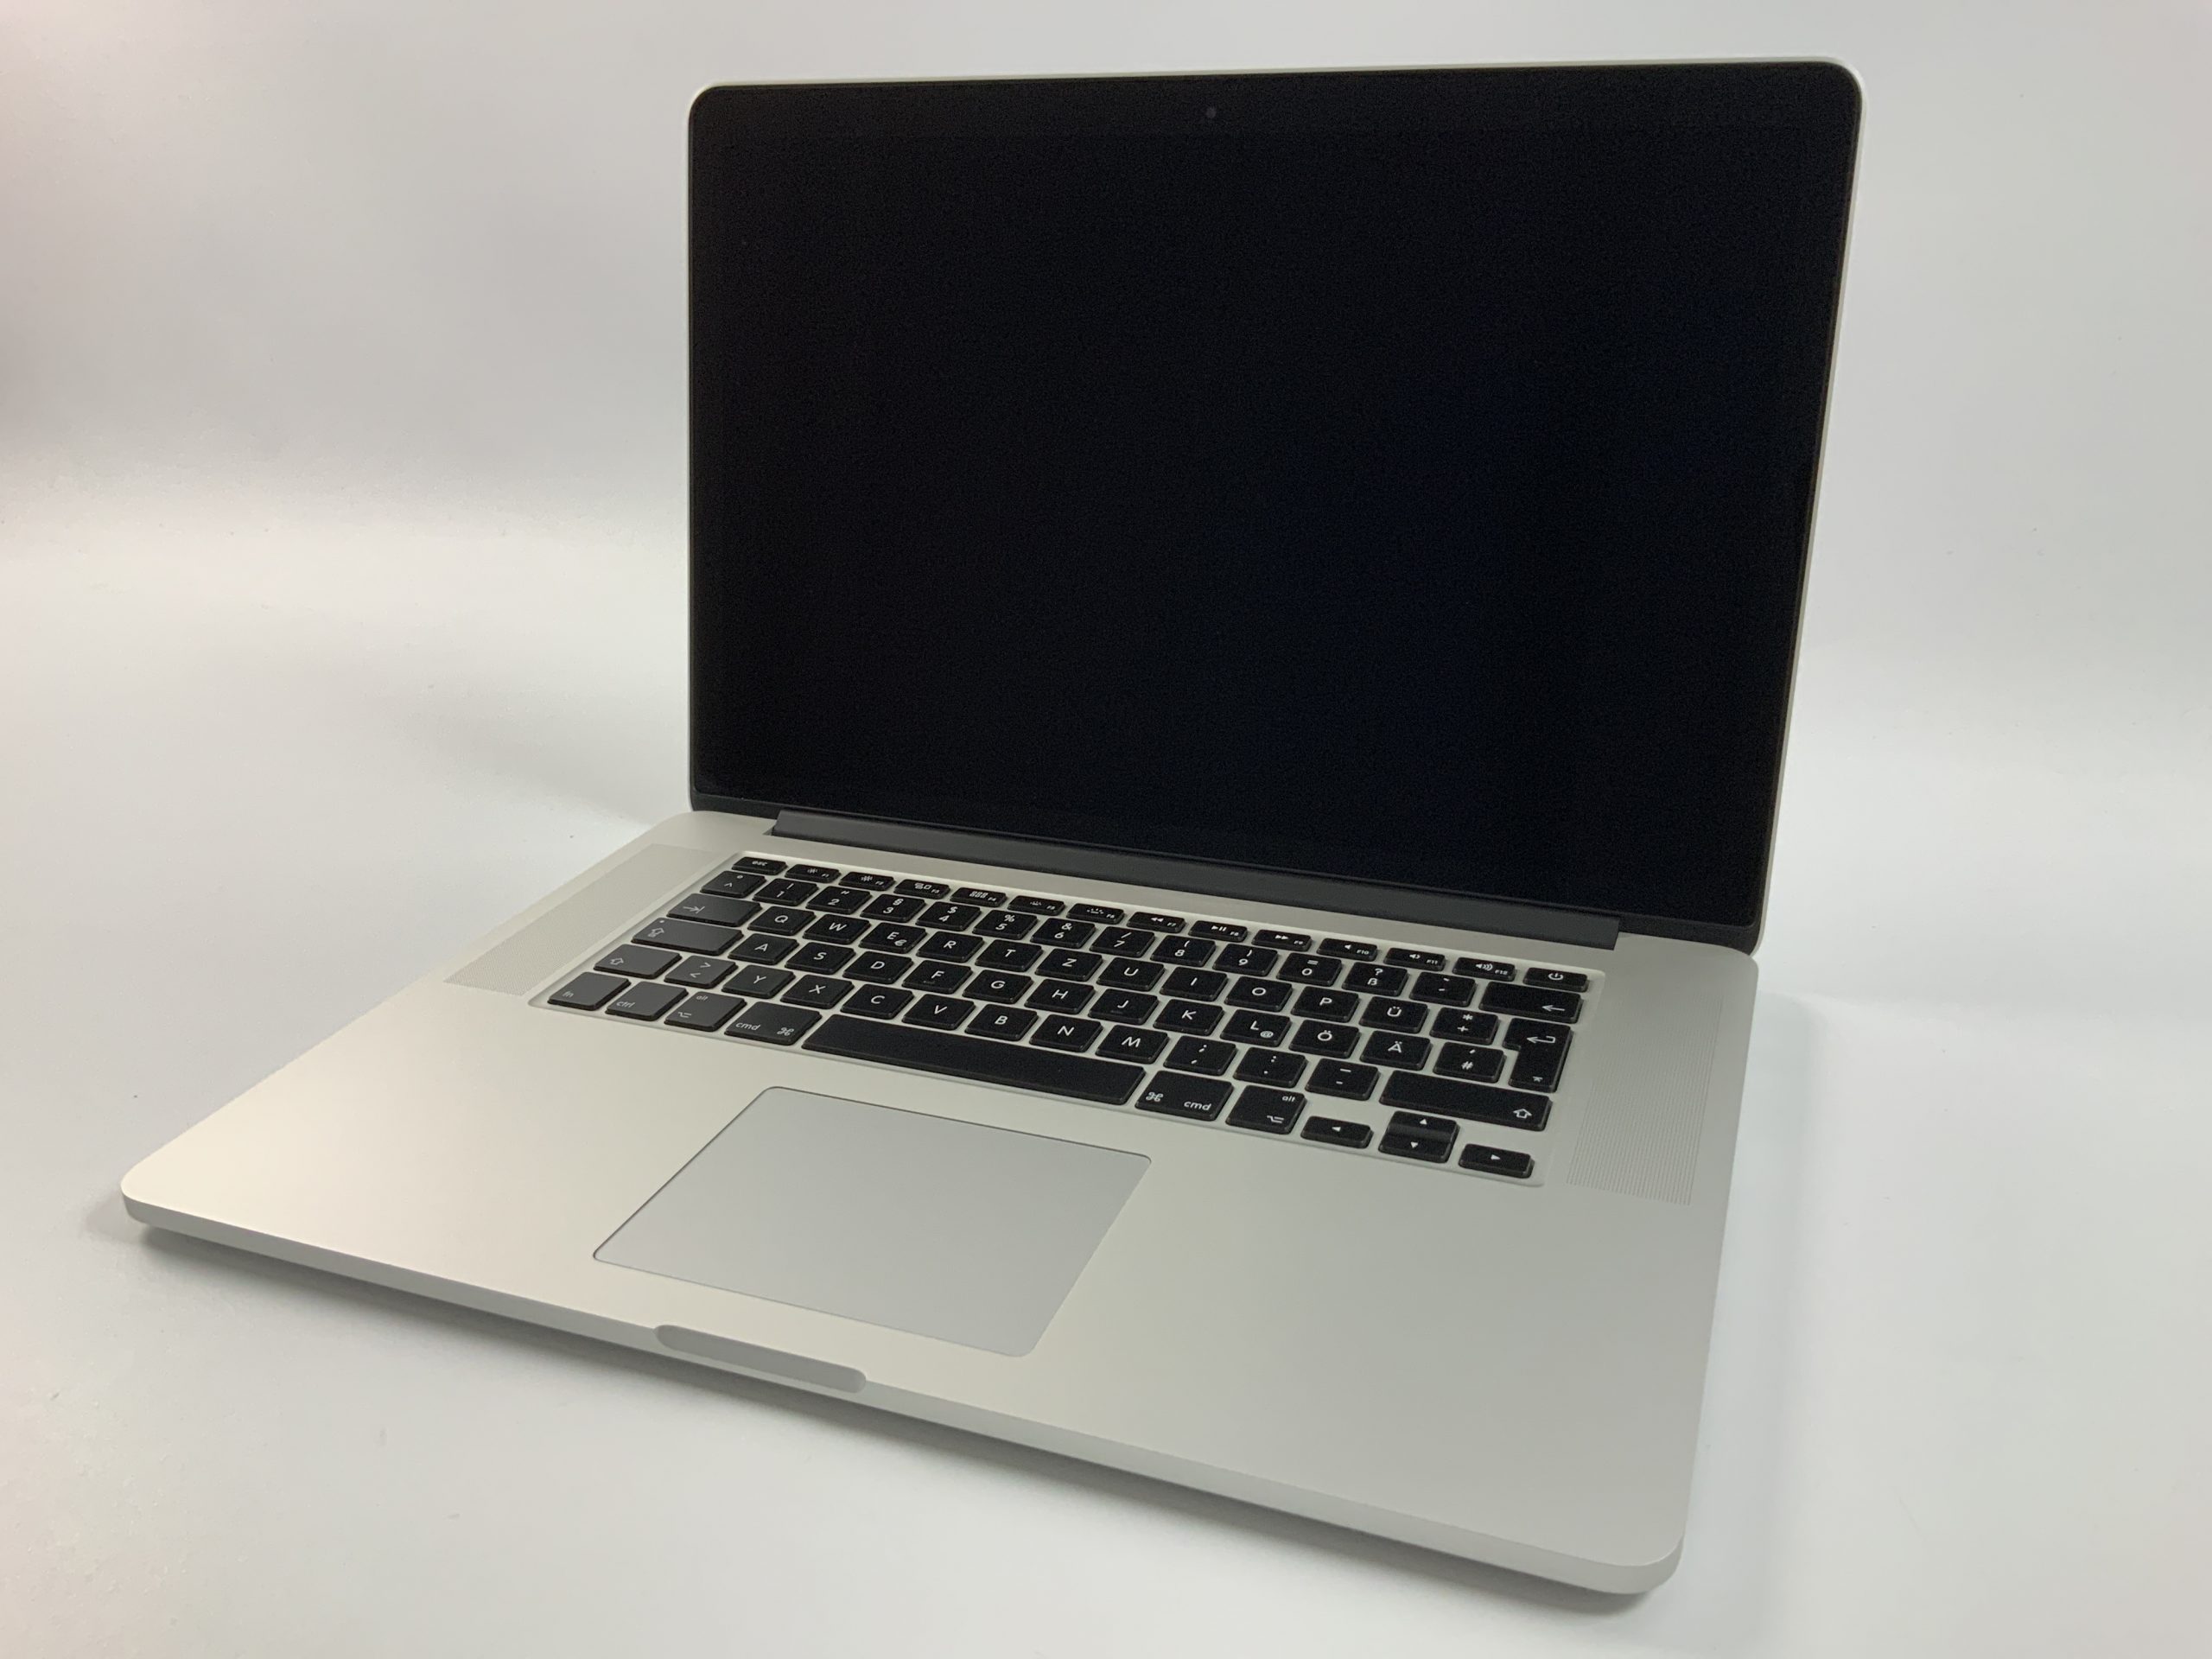 MacBook Pro Retina 15" Mid 2014 (Intel Quad-Core i7 2.5 GHz 16 GB RAM 512 GB SSD), Intel Quad-Core i7 2.5 GHz, 16 GB RAM, 512 GB SSD, Bild 1